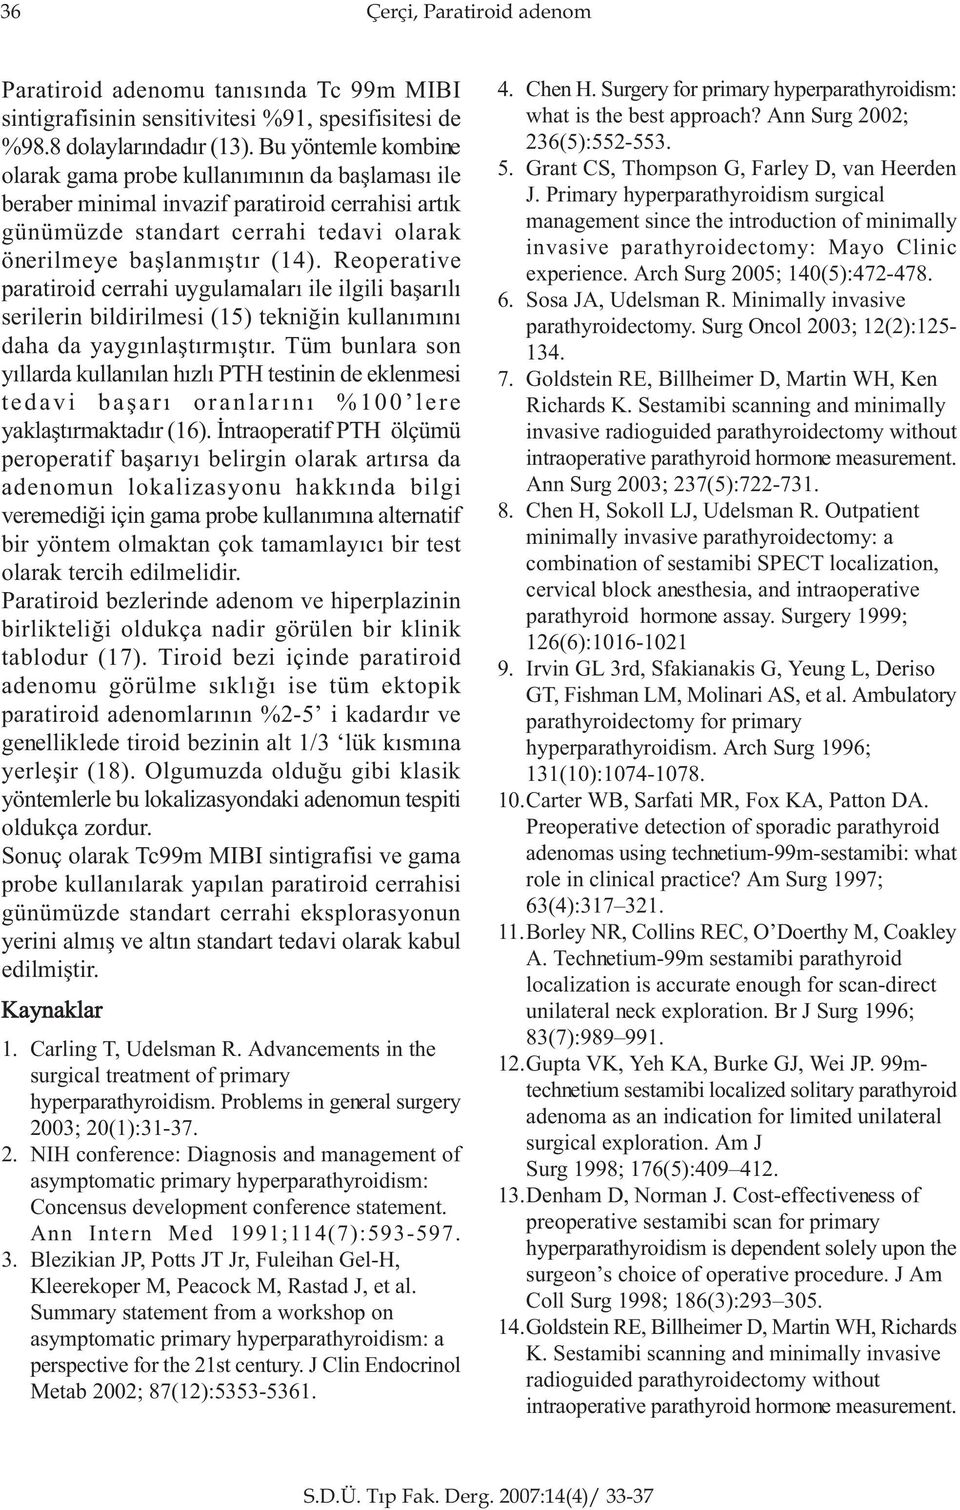 Reoperative paratiroid cerrahi uygulamalarý ile ilgili baþarýlý serilerin bildirilmesi (15) tekniðin kullanýmýný daha da yaygýnlaþtýrmýþtýr.